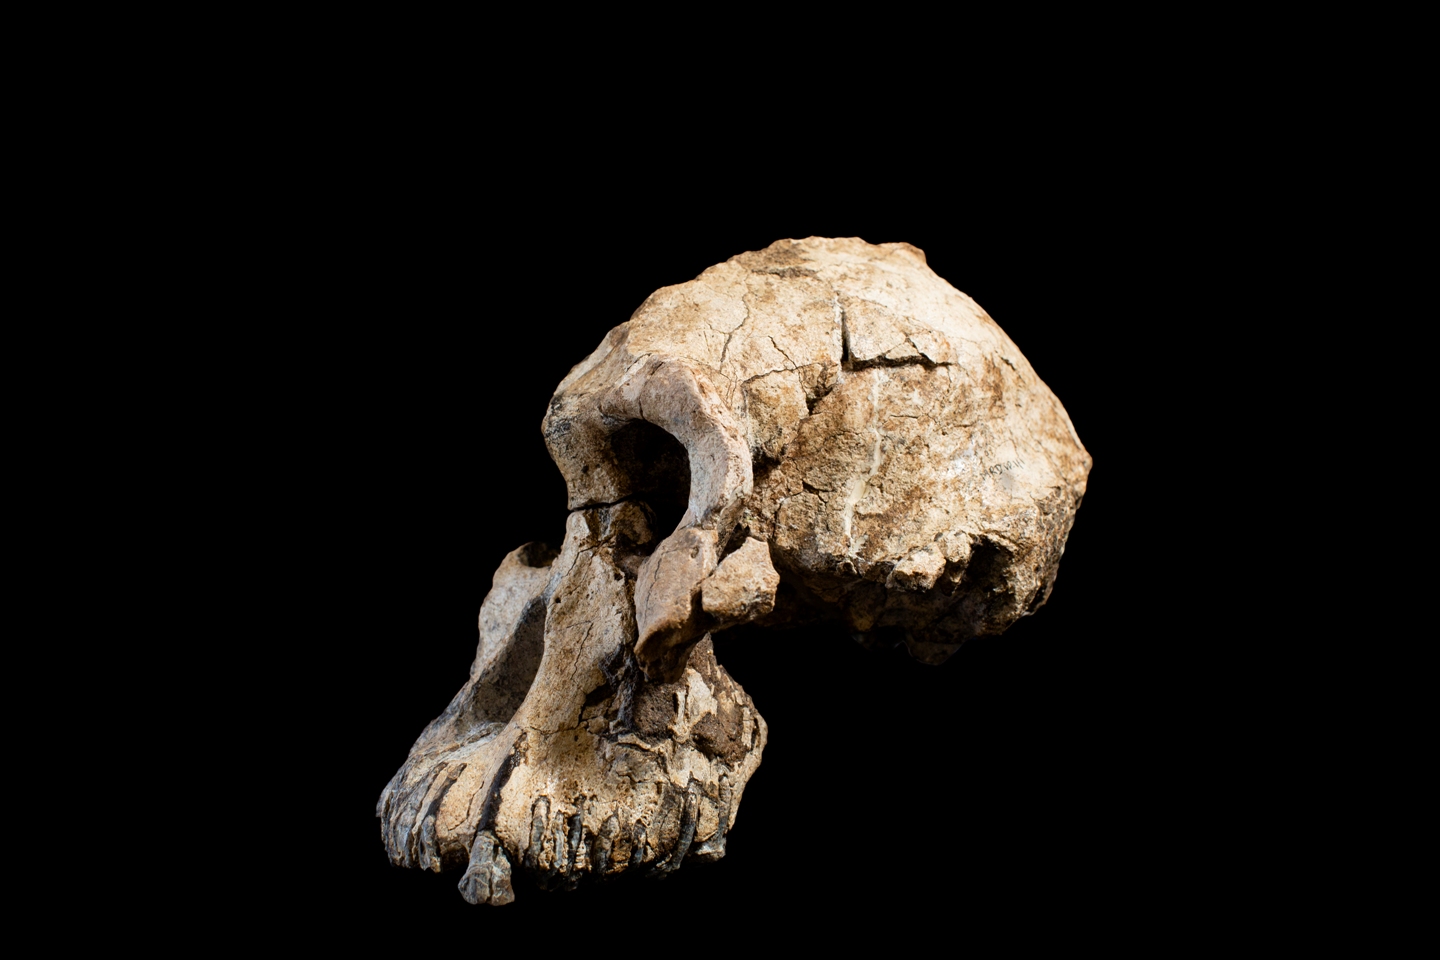 El crani, trobat el 2016, té 3,8 milions d'anys d'antiguitat. Crèdit: Dale Omori, CMNH